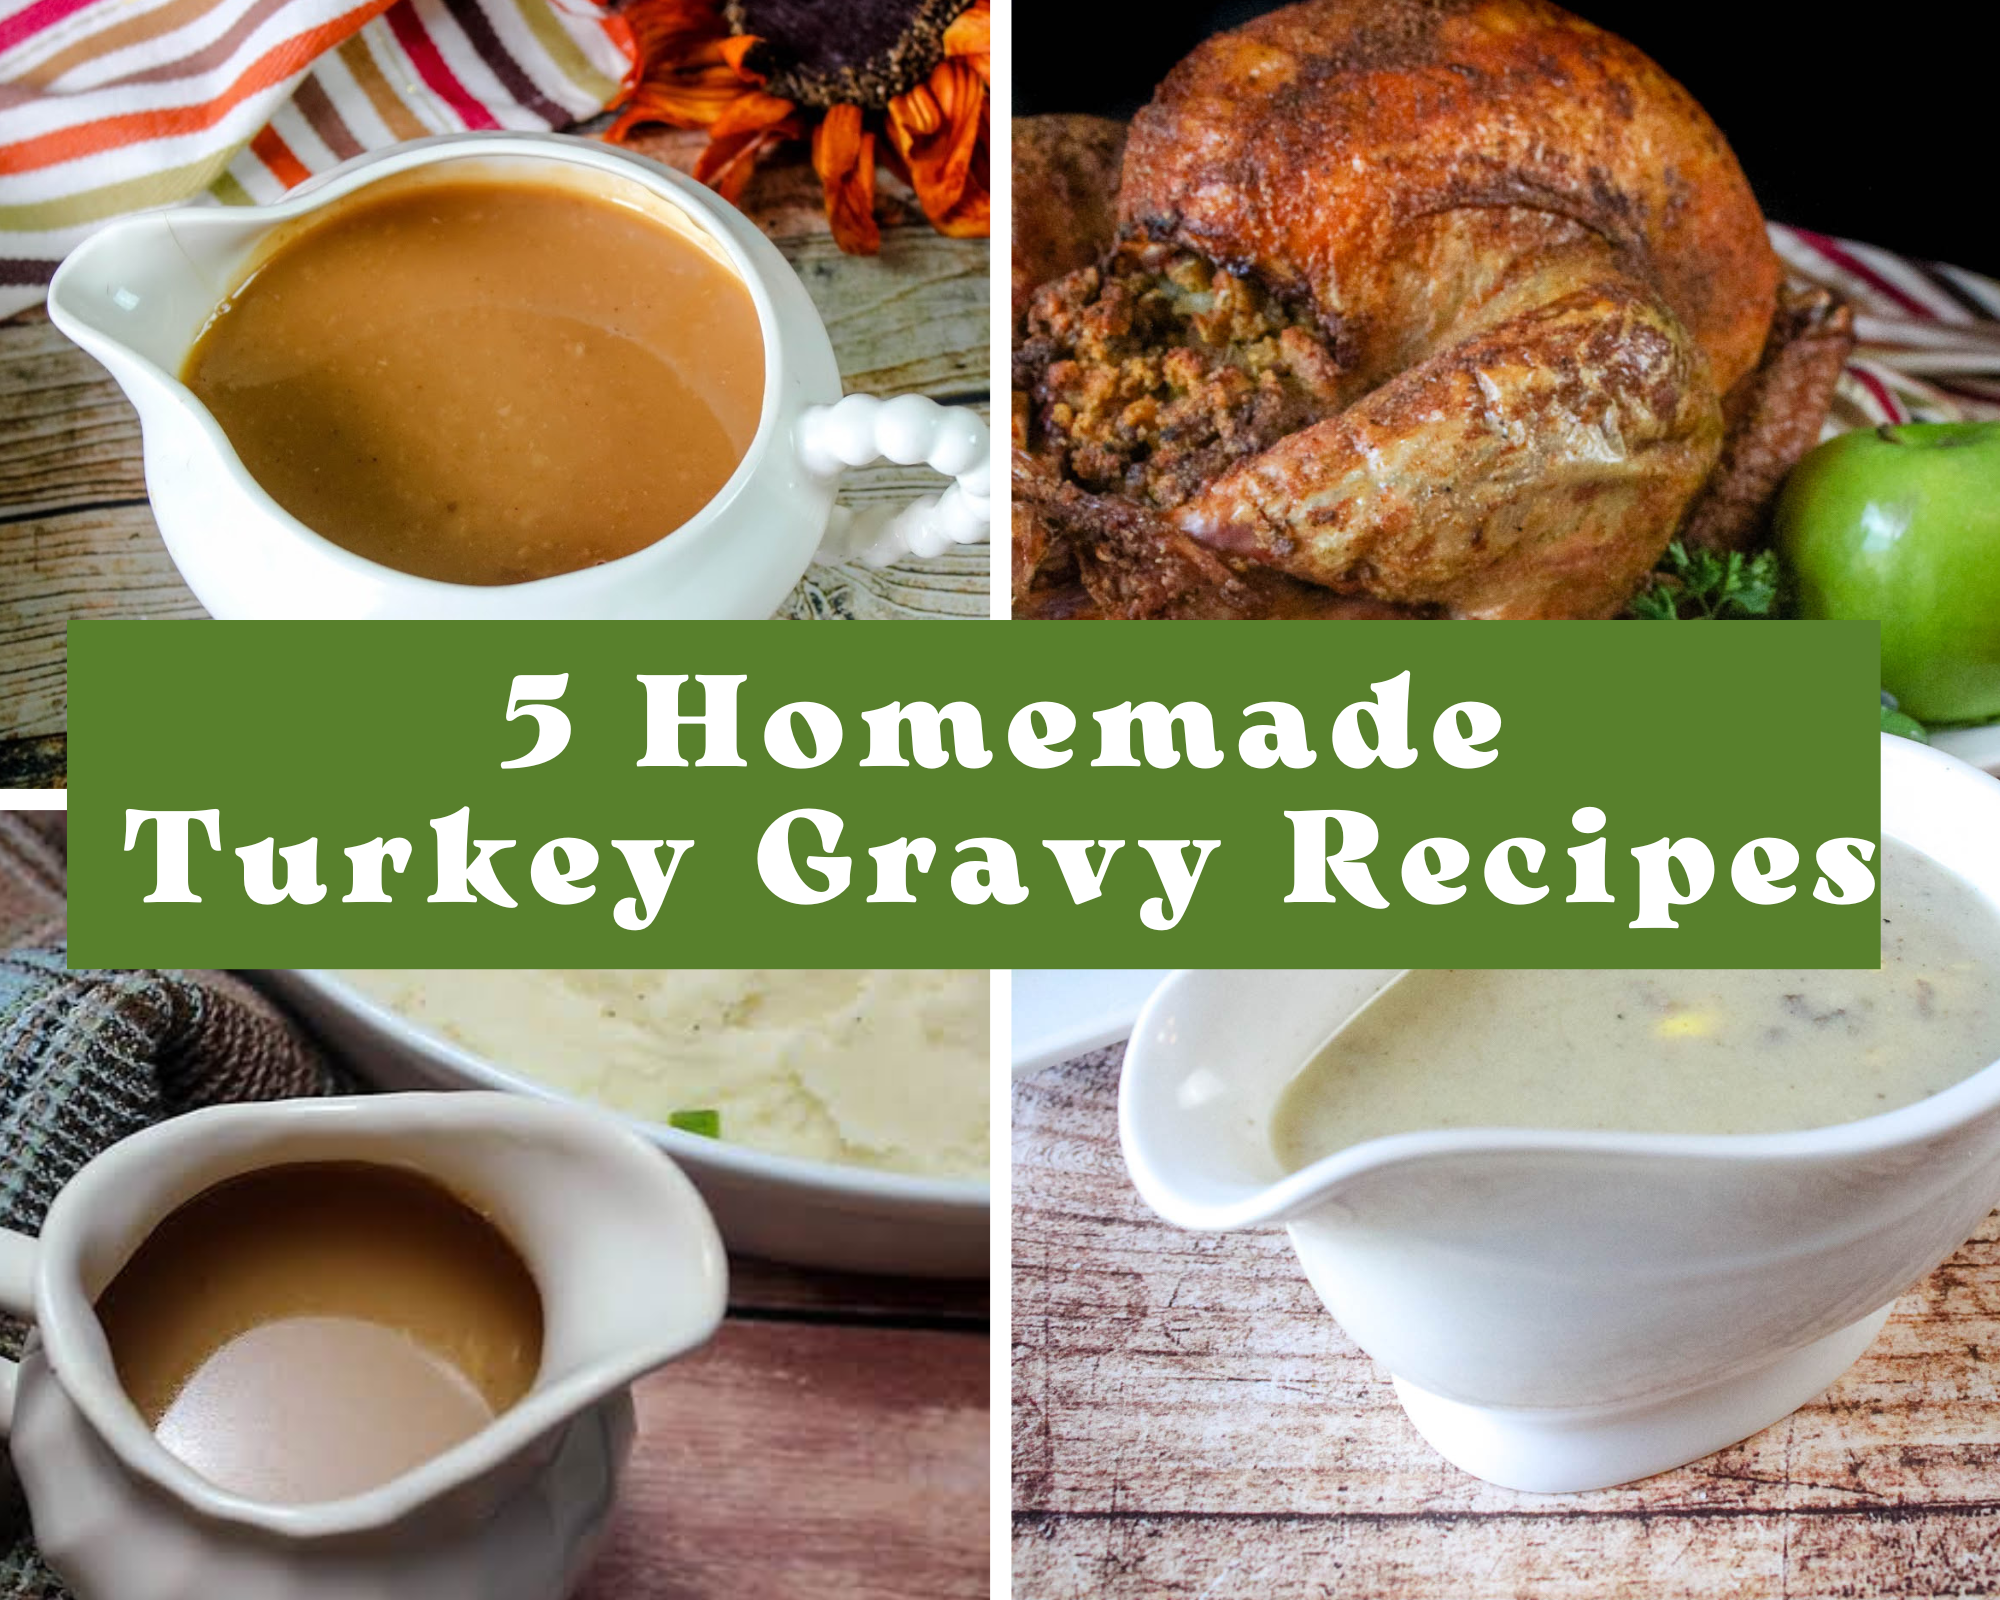 5 Homemade Turkey Gravy Recipes